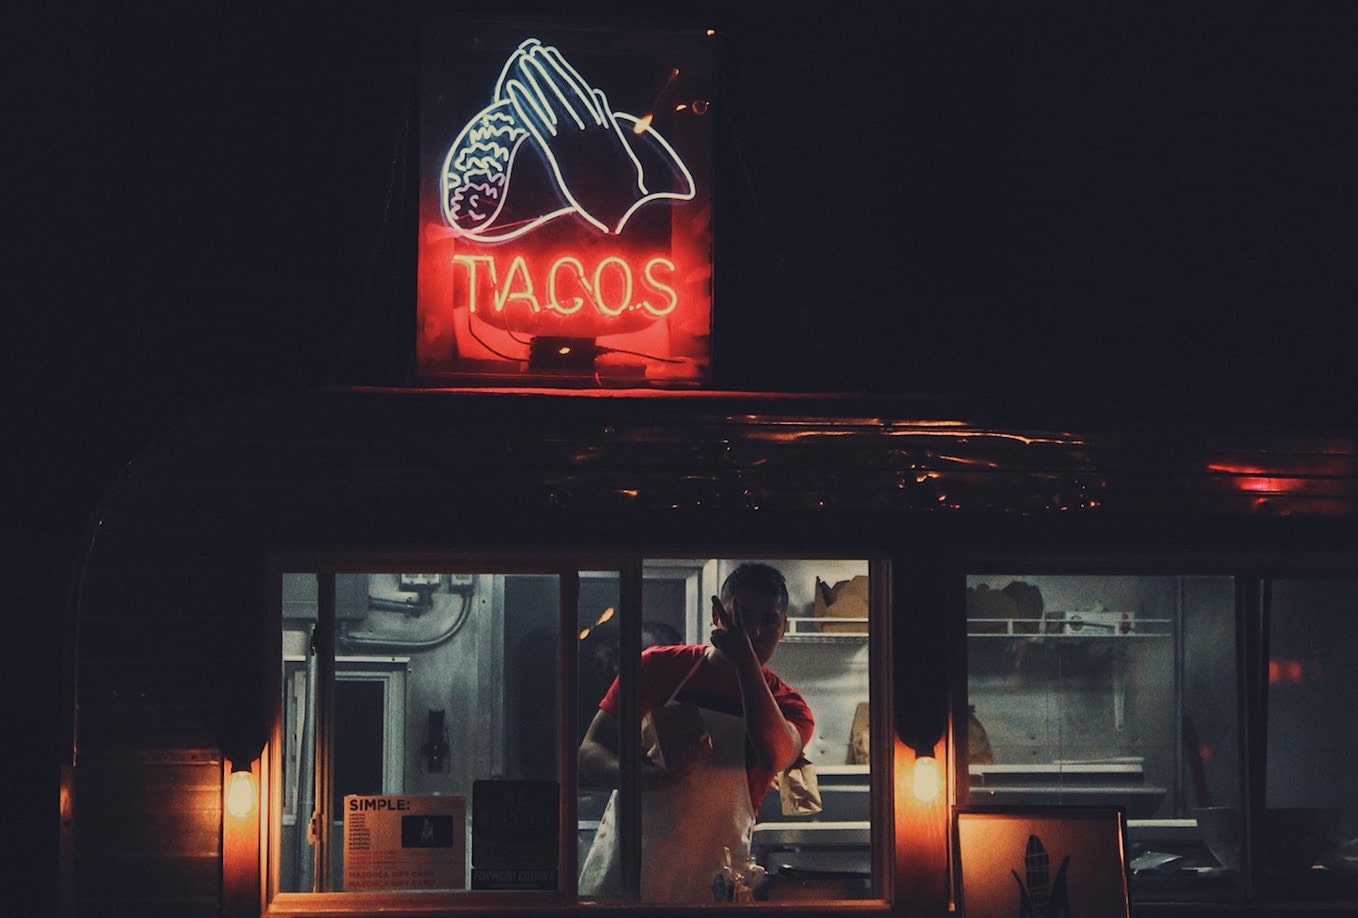 Taco food truck